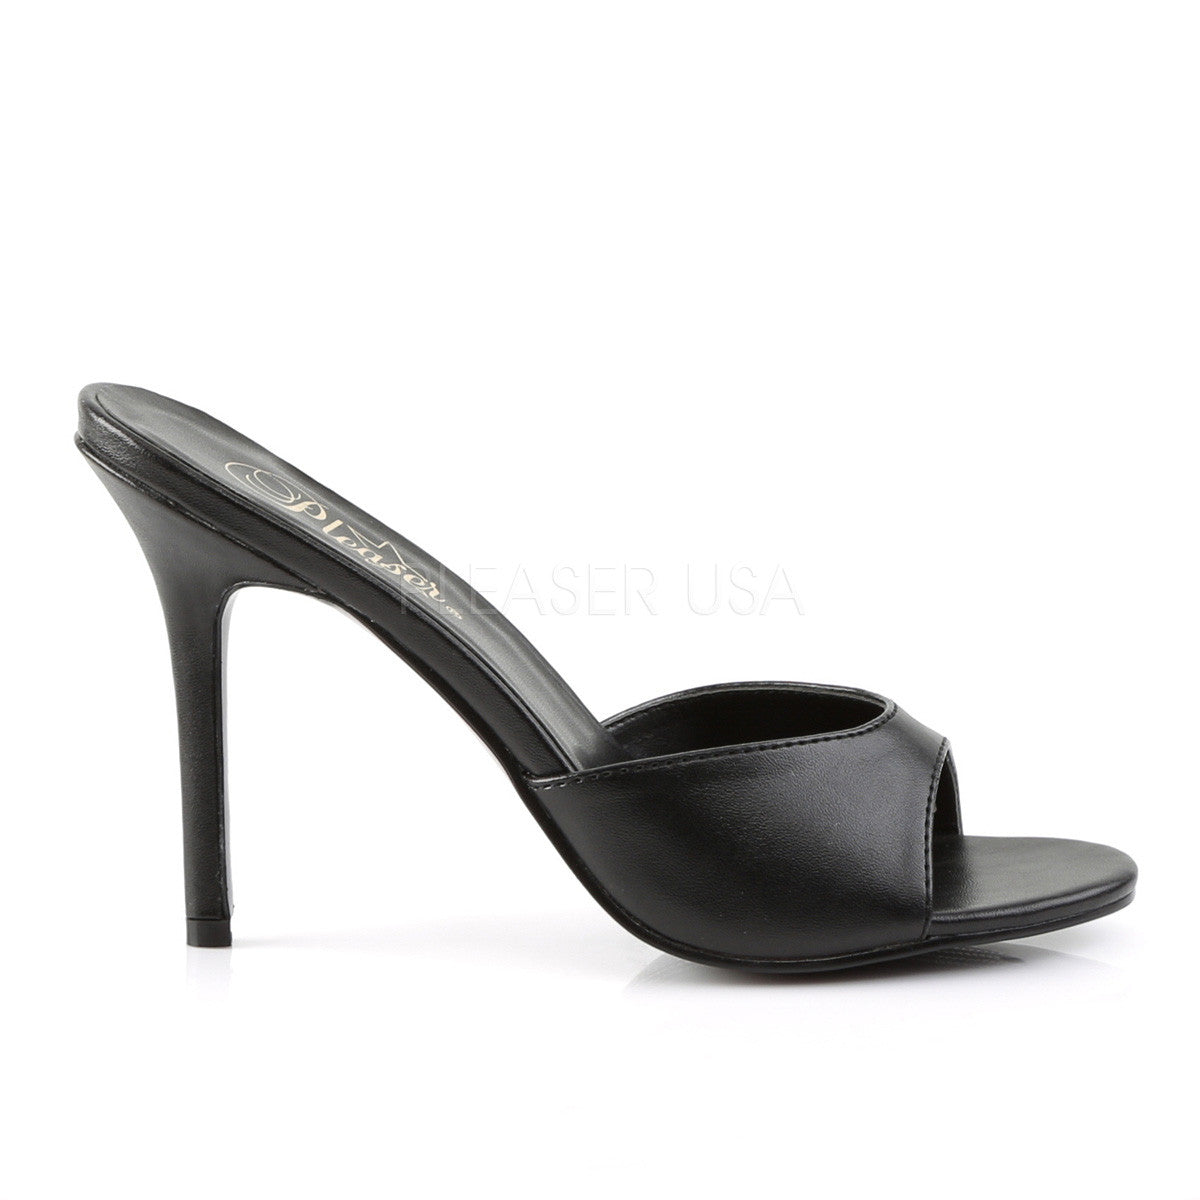 Pleaser CLASSIQUE-01 Black Pu Slides - Shoecup.com - 5